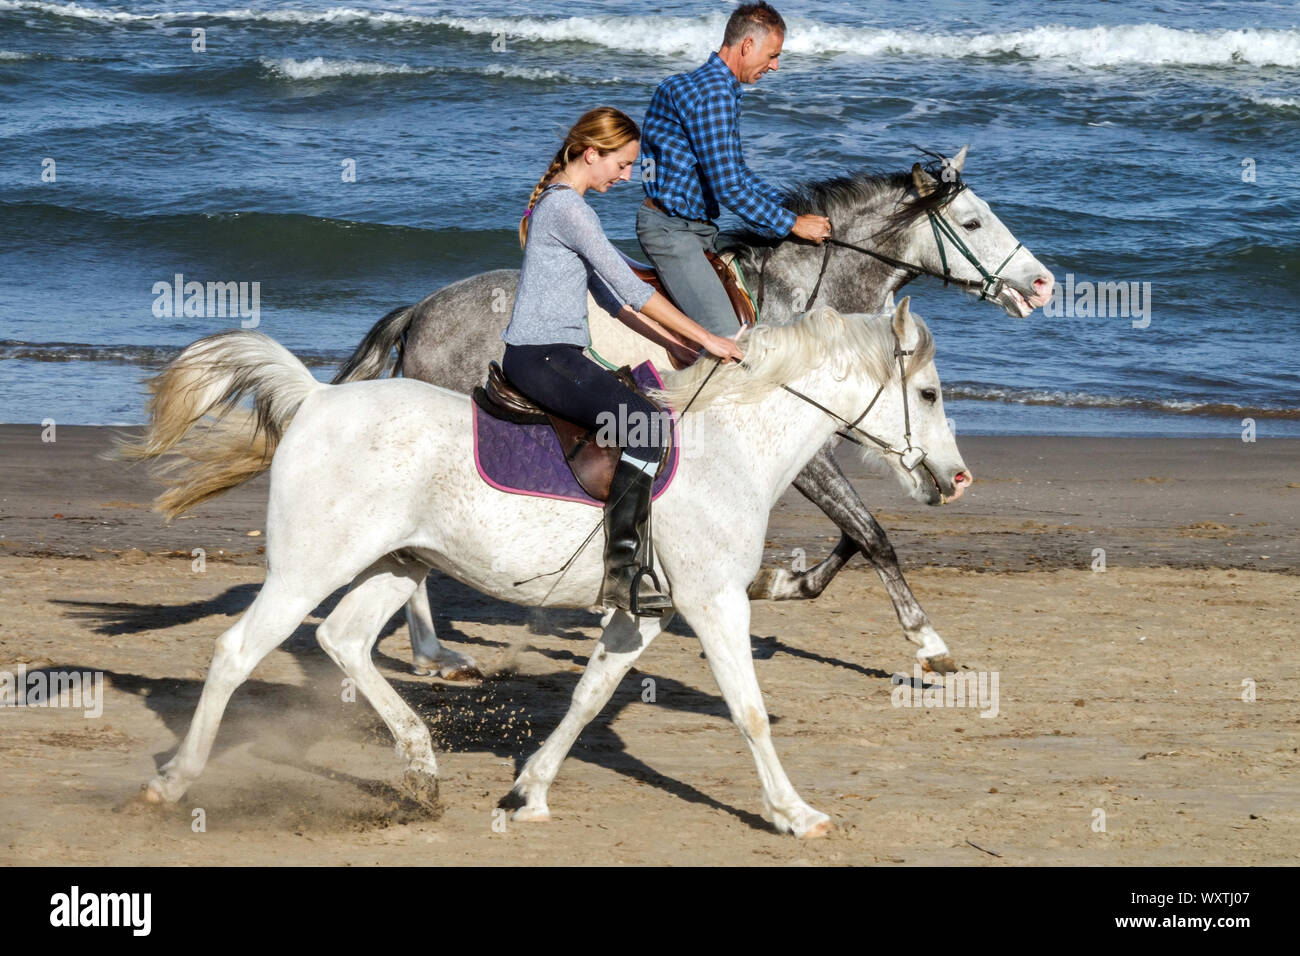 Cavaliers de bord de mer couple équitation chevaux sur une plage, Homme et femme équitation plage gens Espagne Costa Blanca Banque D'Images